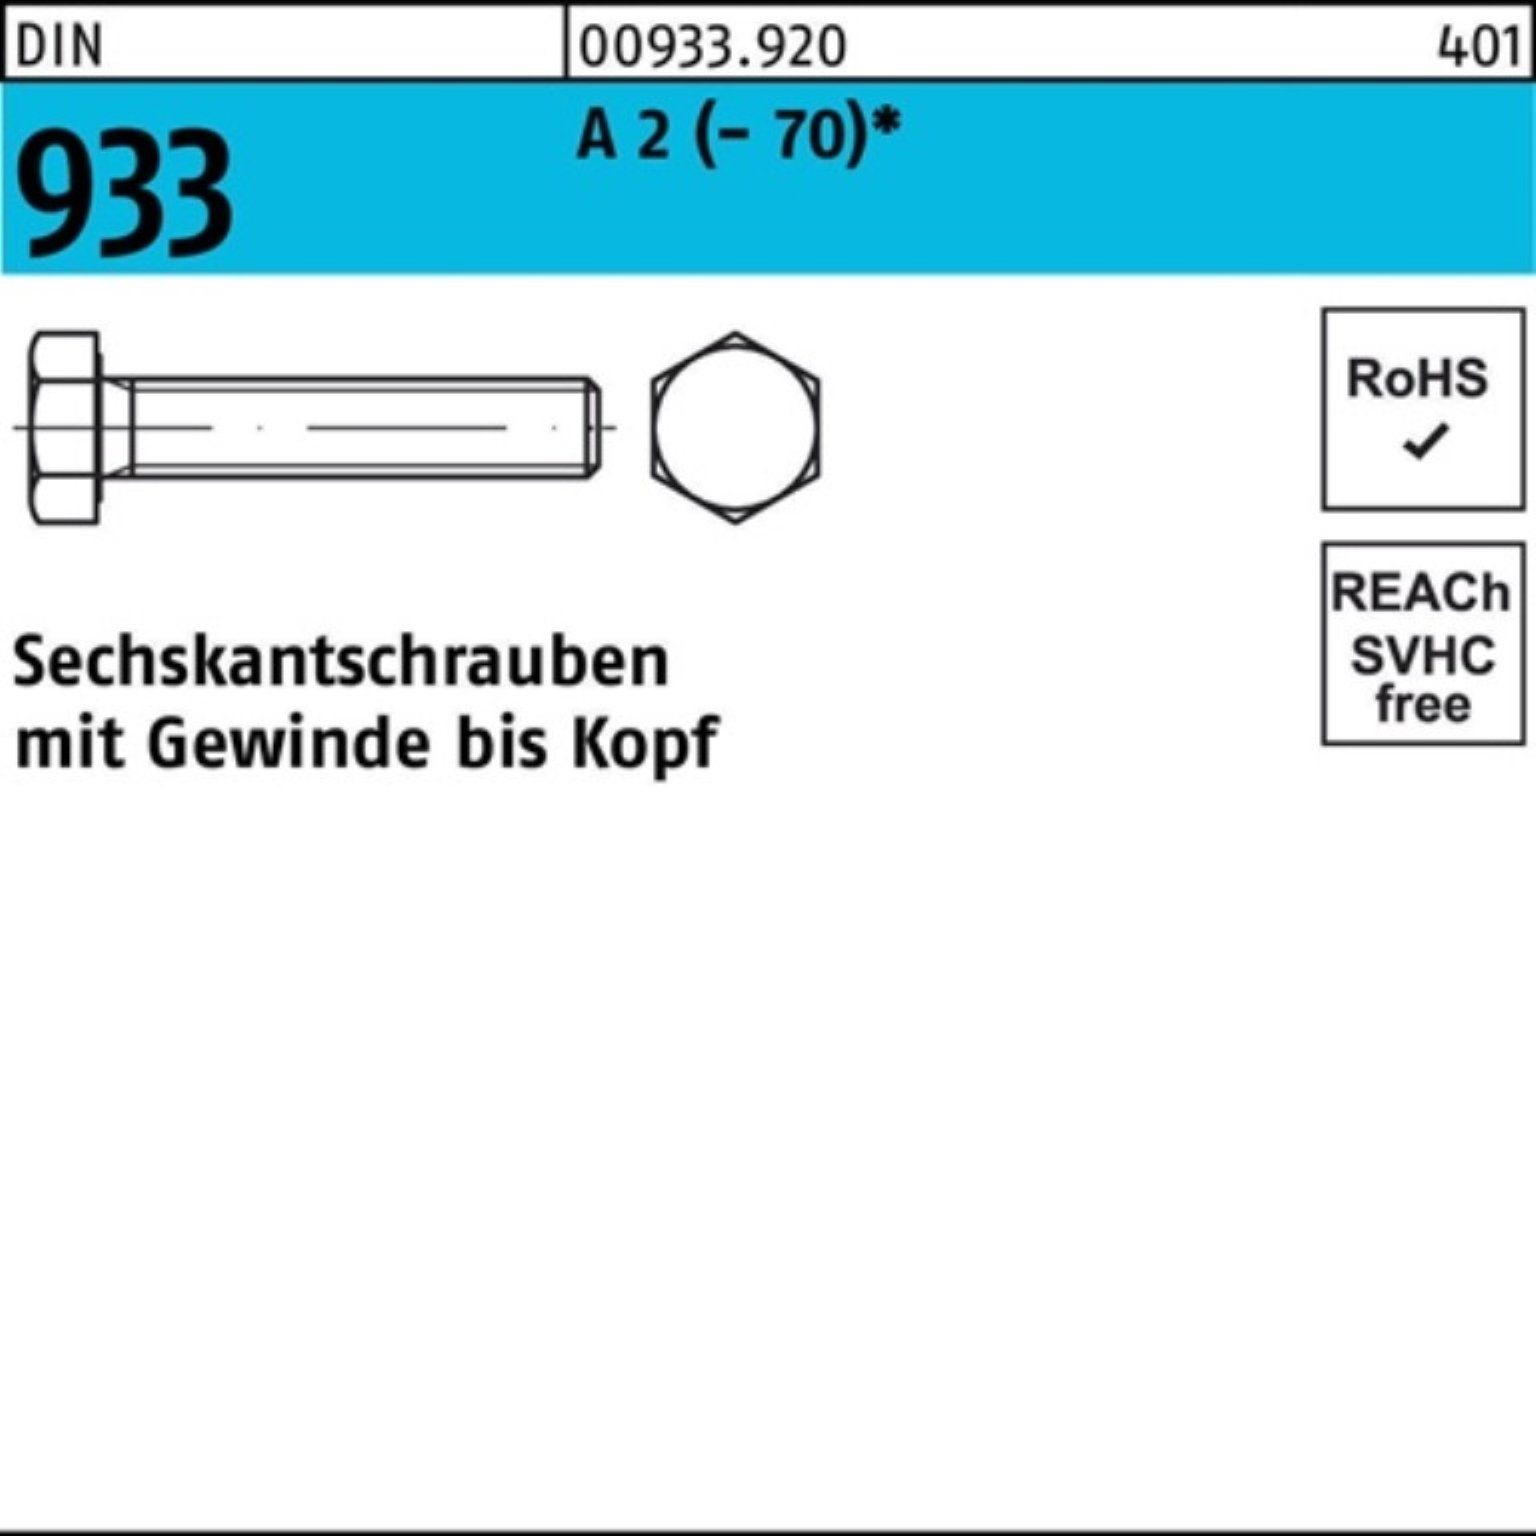 Reyher Sechskantschraube 100 M3x 933 35 100er Pack (70) A Stück DIN VG D 2 Sechskantschraube